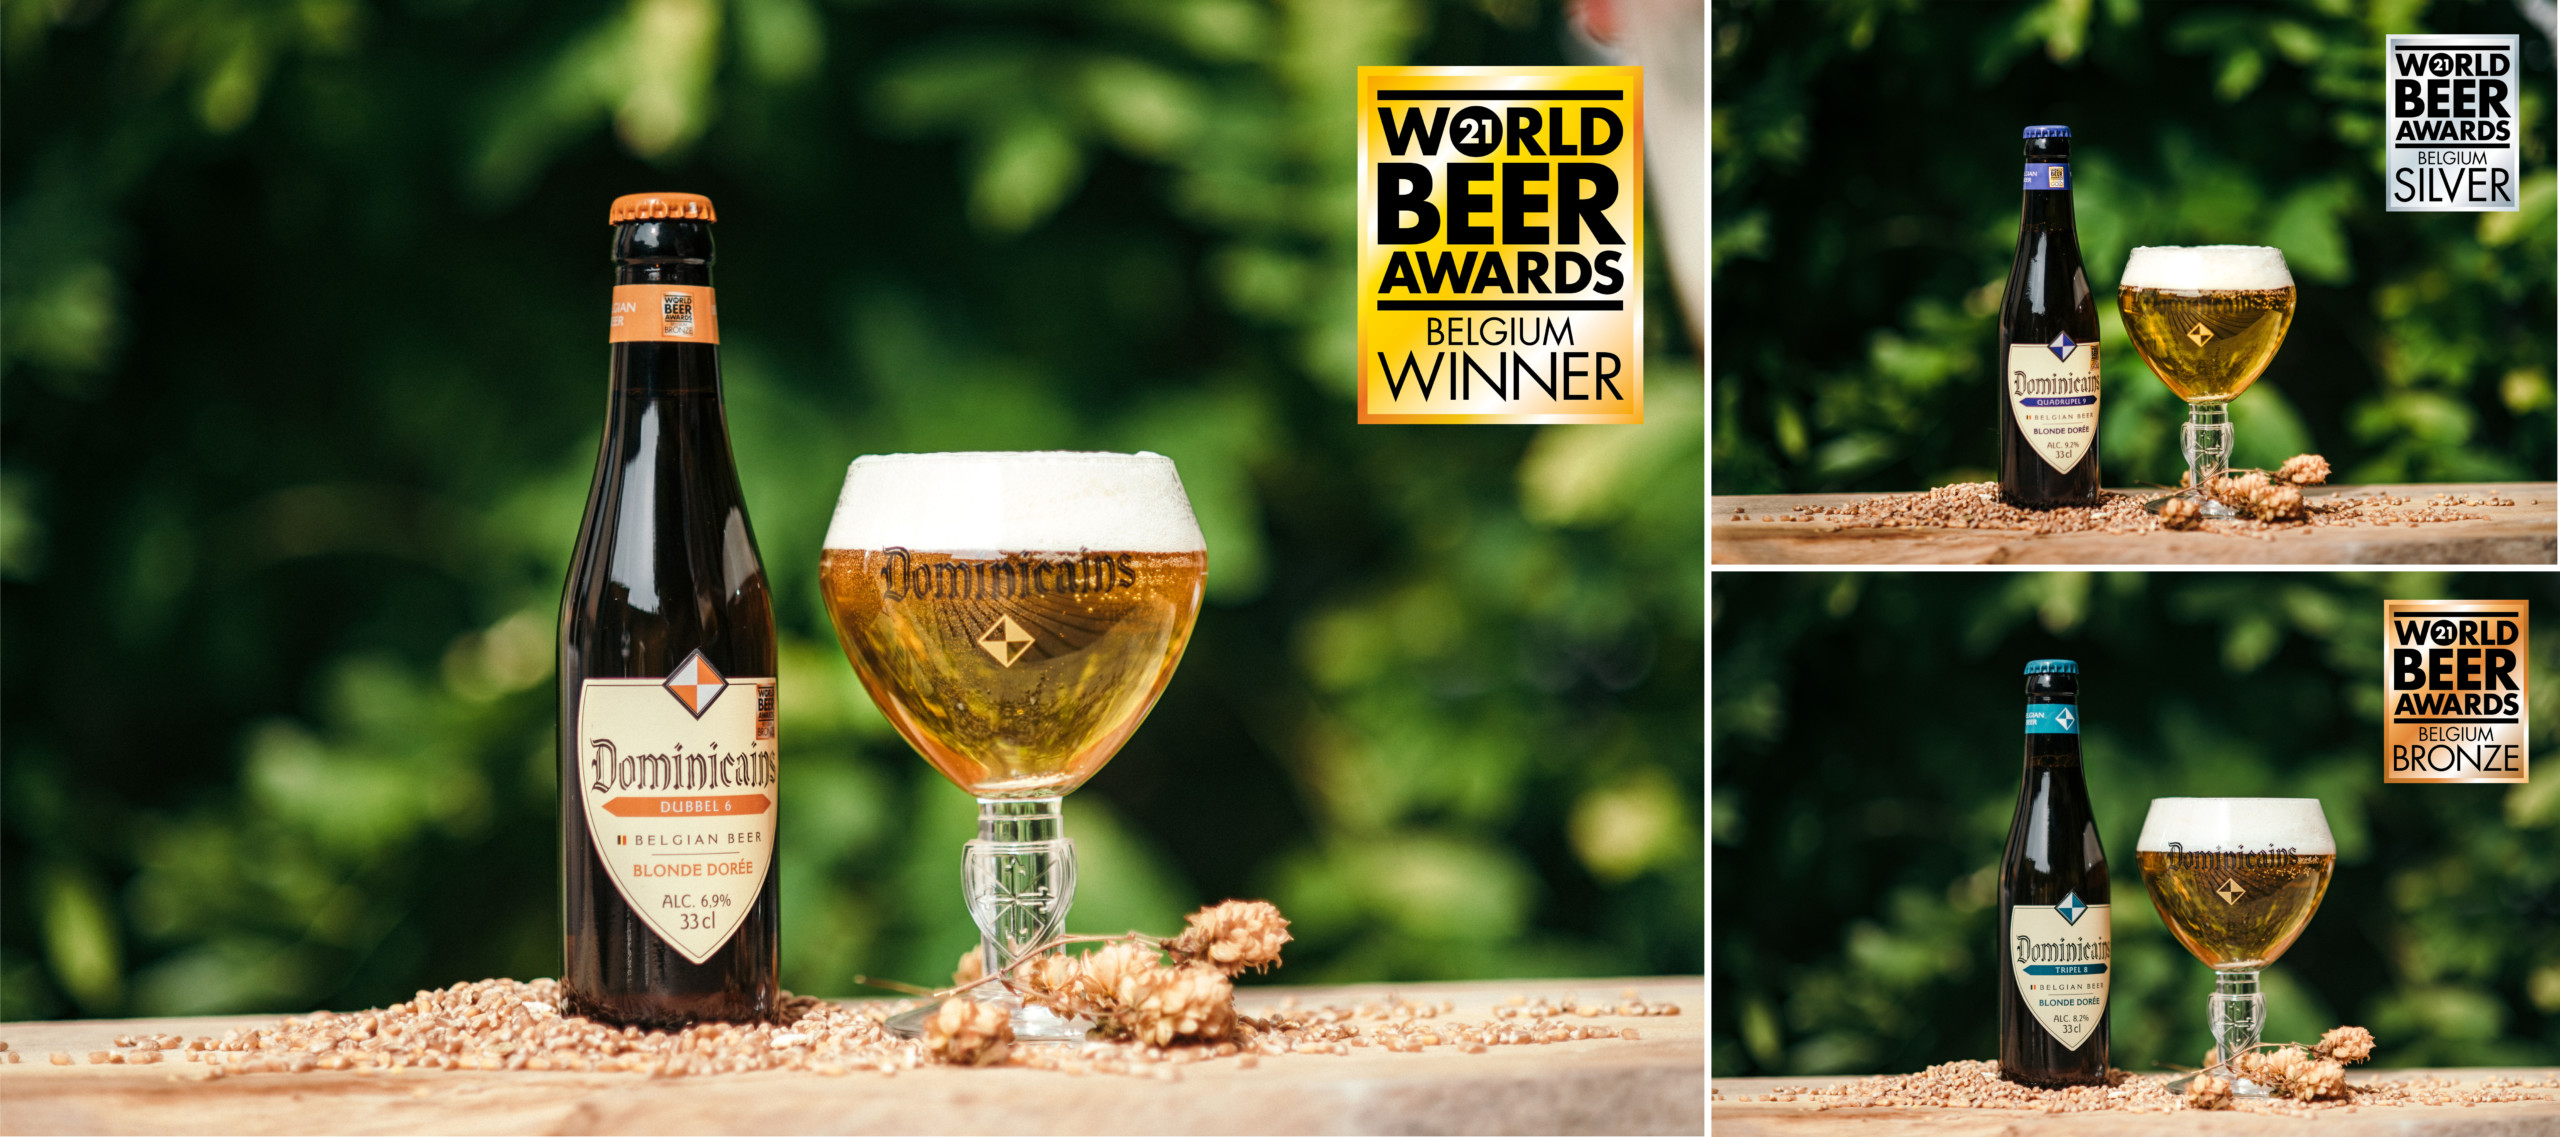 Het beste Belgische bier: Dominicains Dubbel